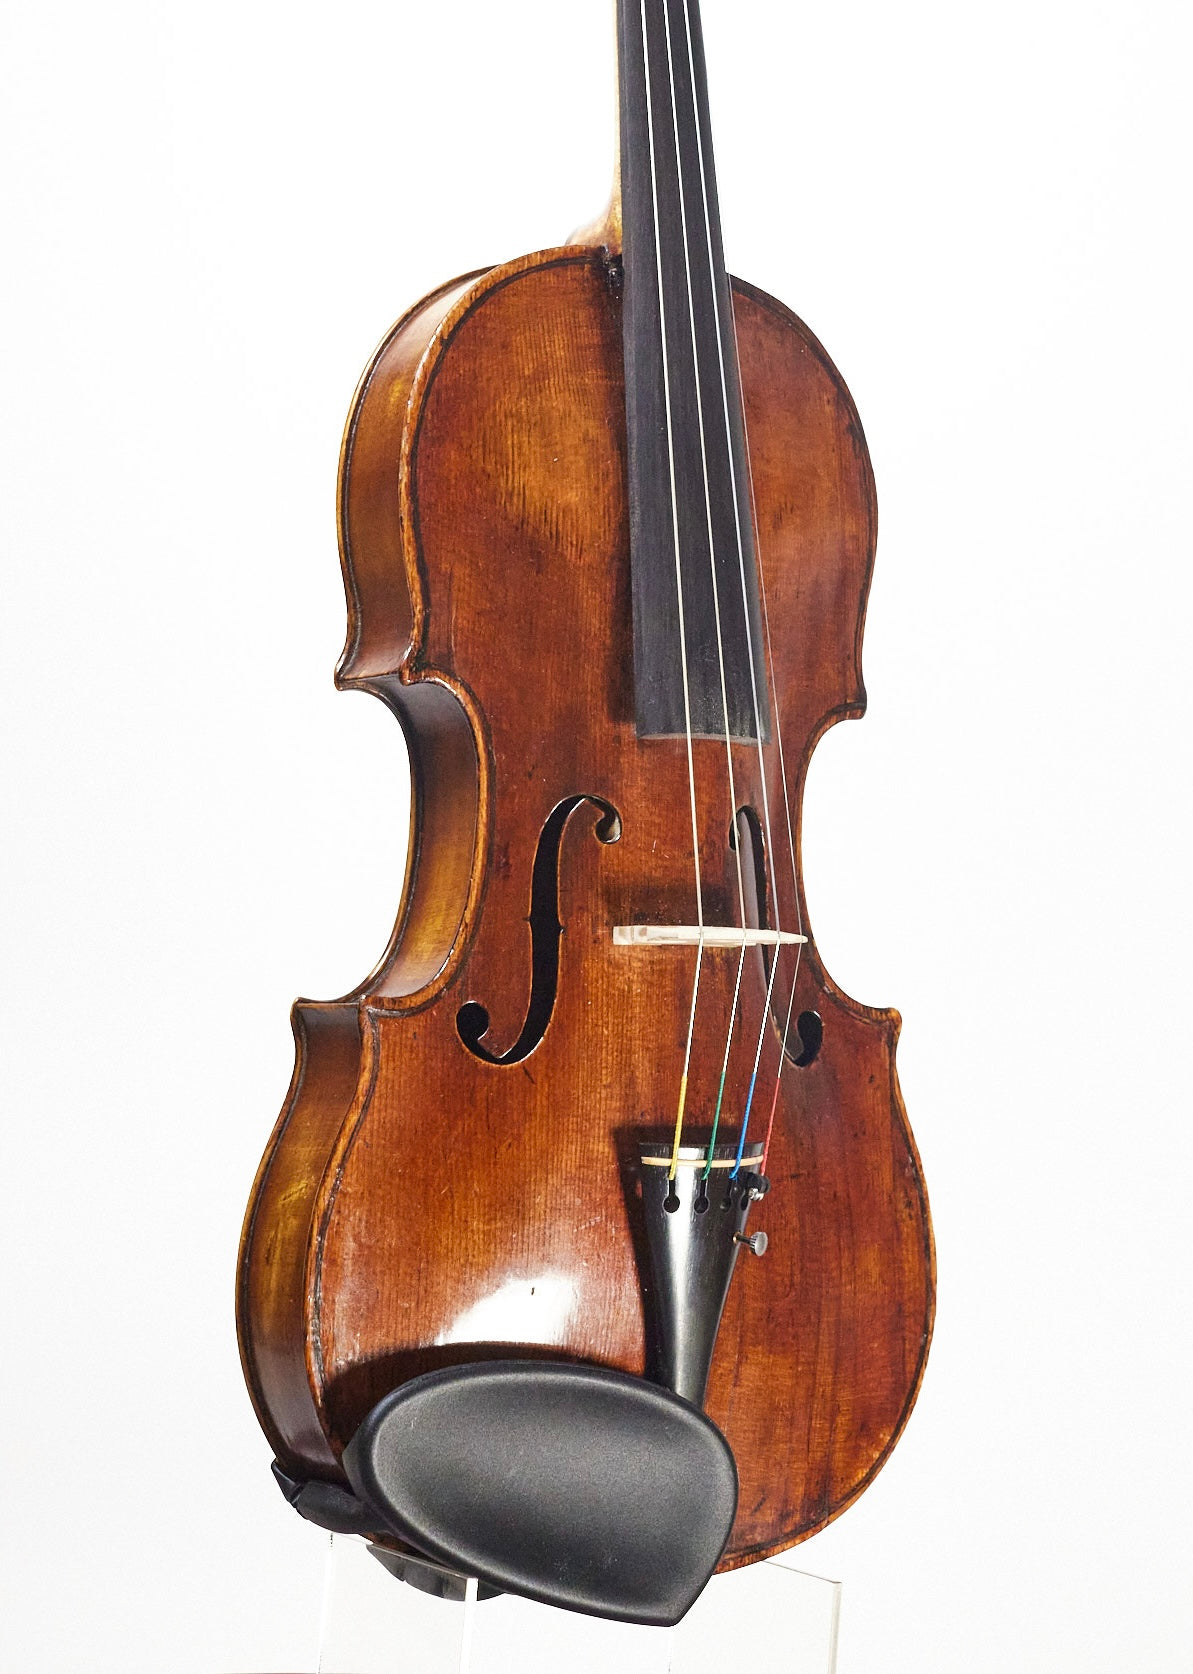 内部記載はJoseph Gagliano 1761 オールドバイオリン - 楽器、器材